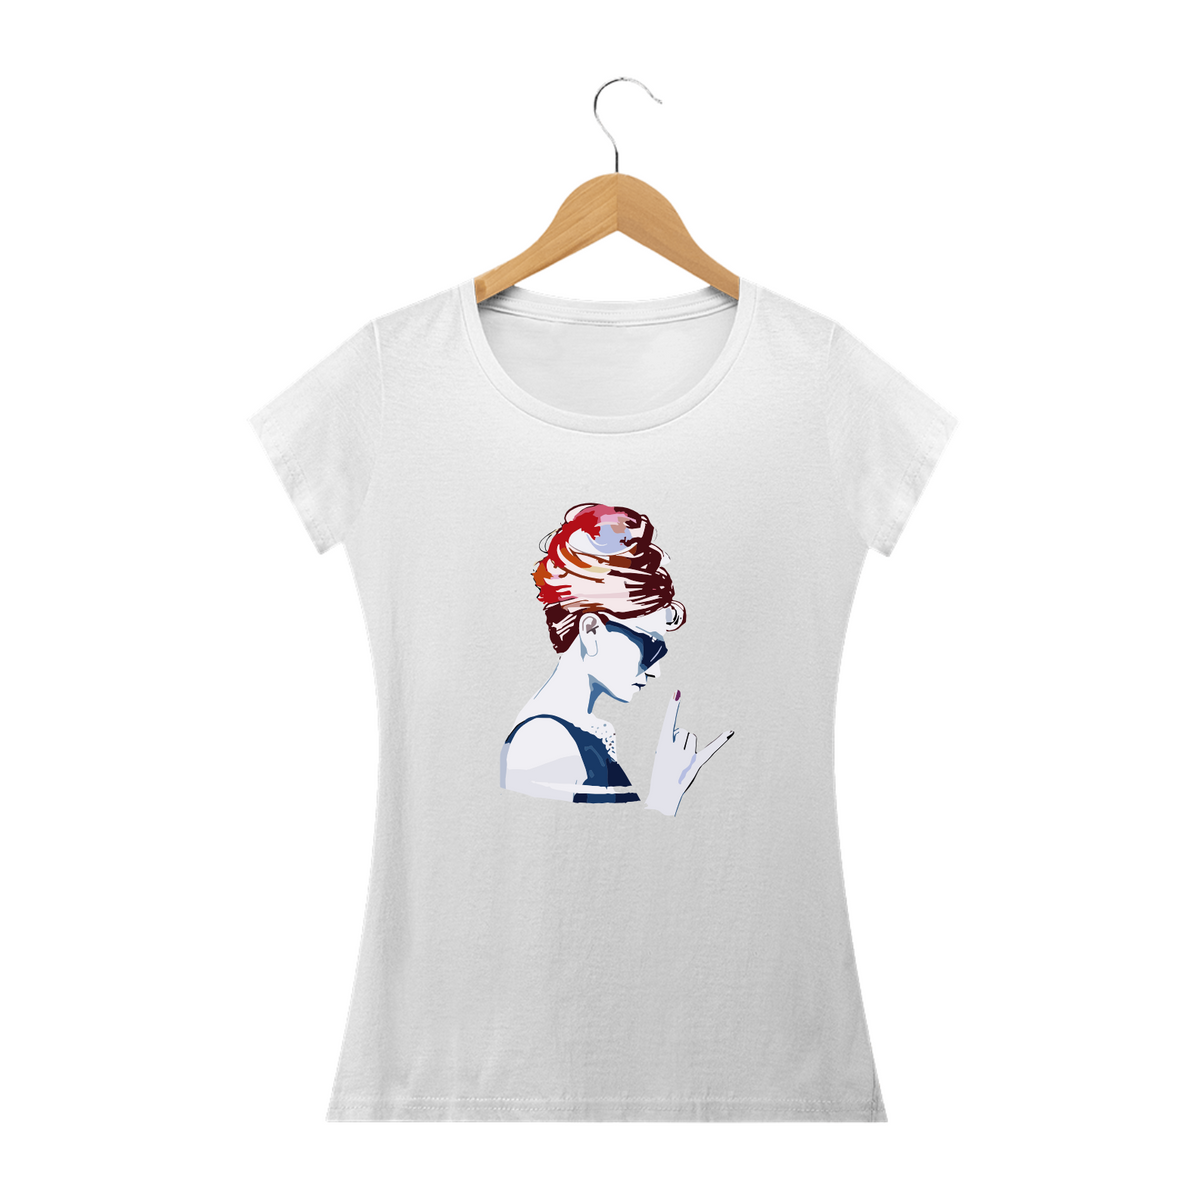 Nome do produto: MADAME ROCK - Camiseta Feminina Personalizada com Estampa Pop Art